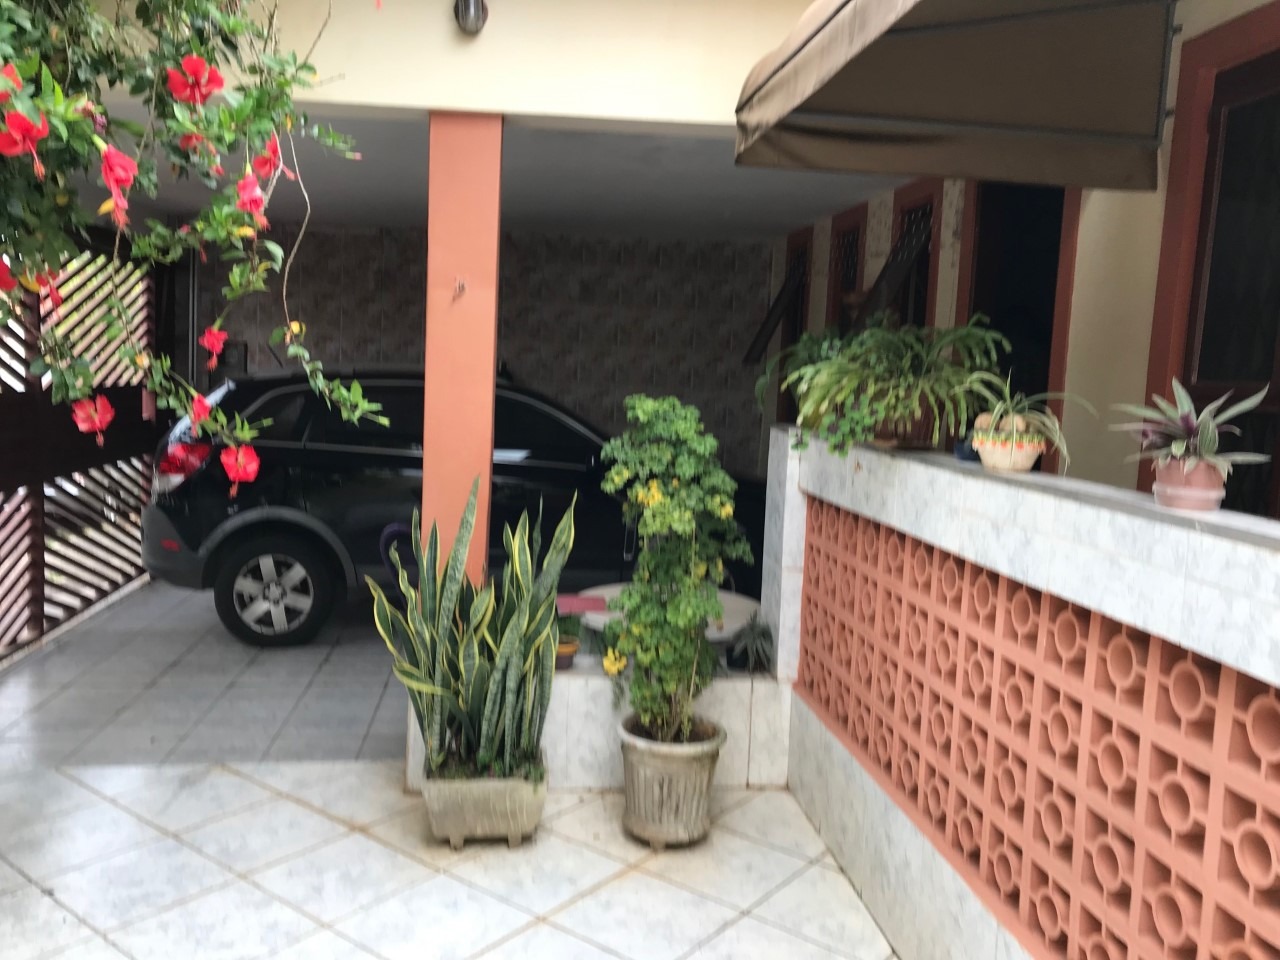 Casa à venda, 3 quartos, 1 suíte, 2 vagas, no bairro Santa Rosa em Piracicaba - SP